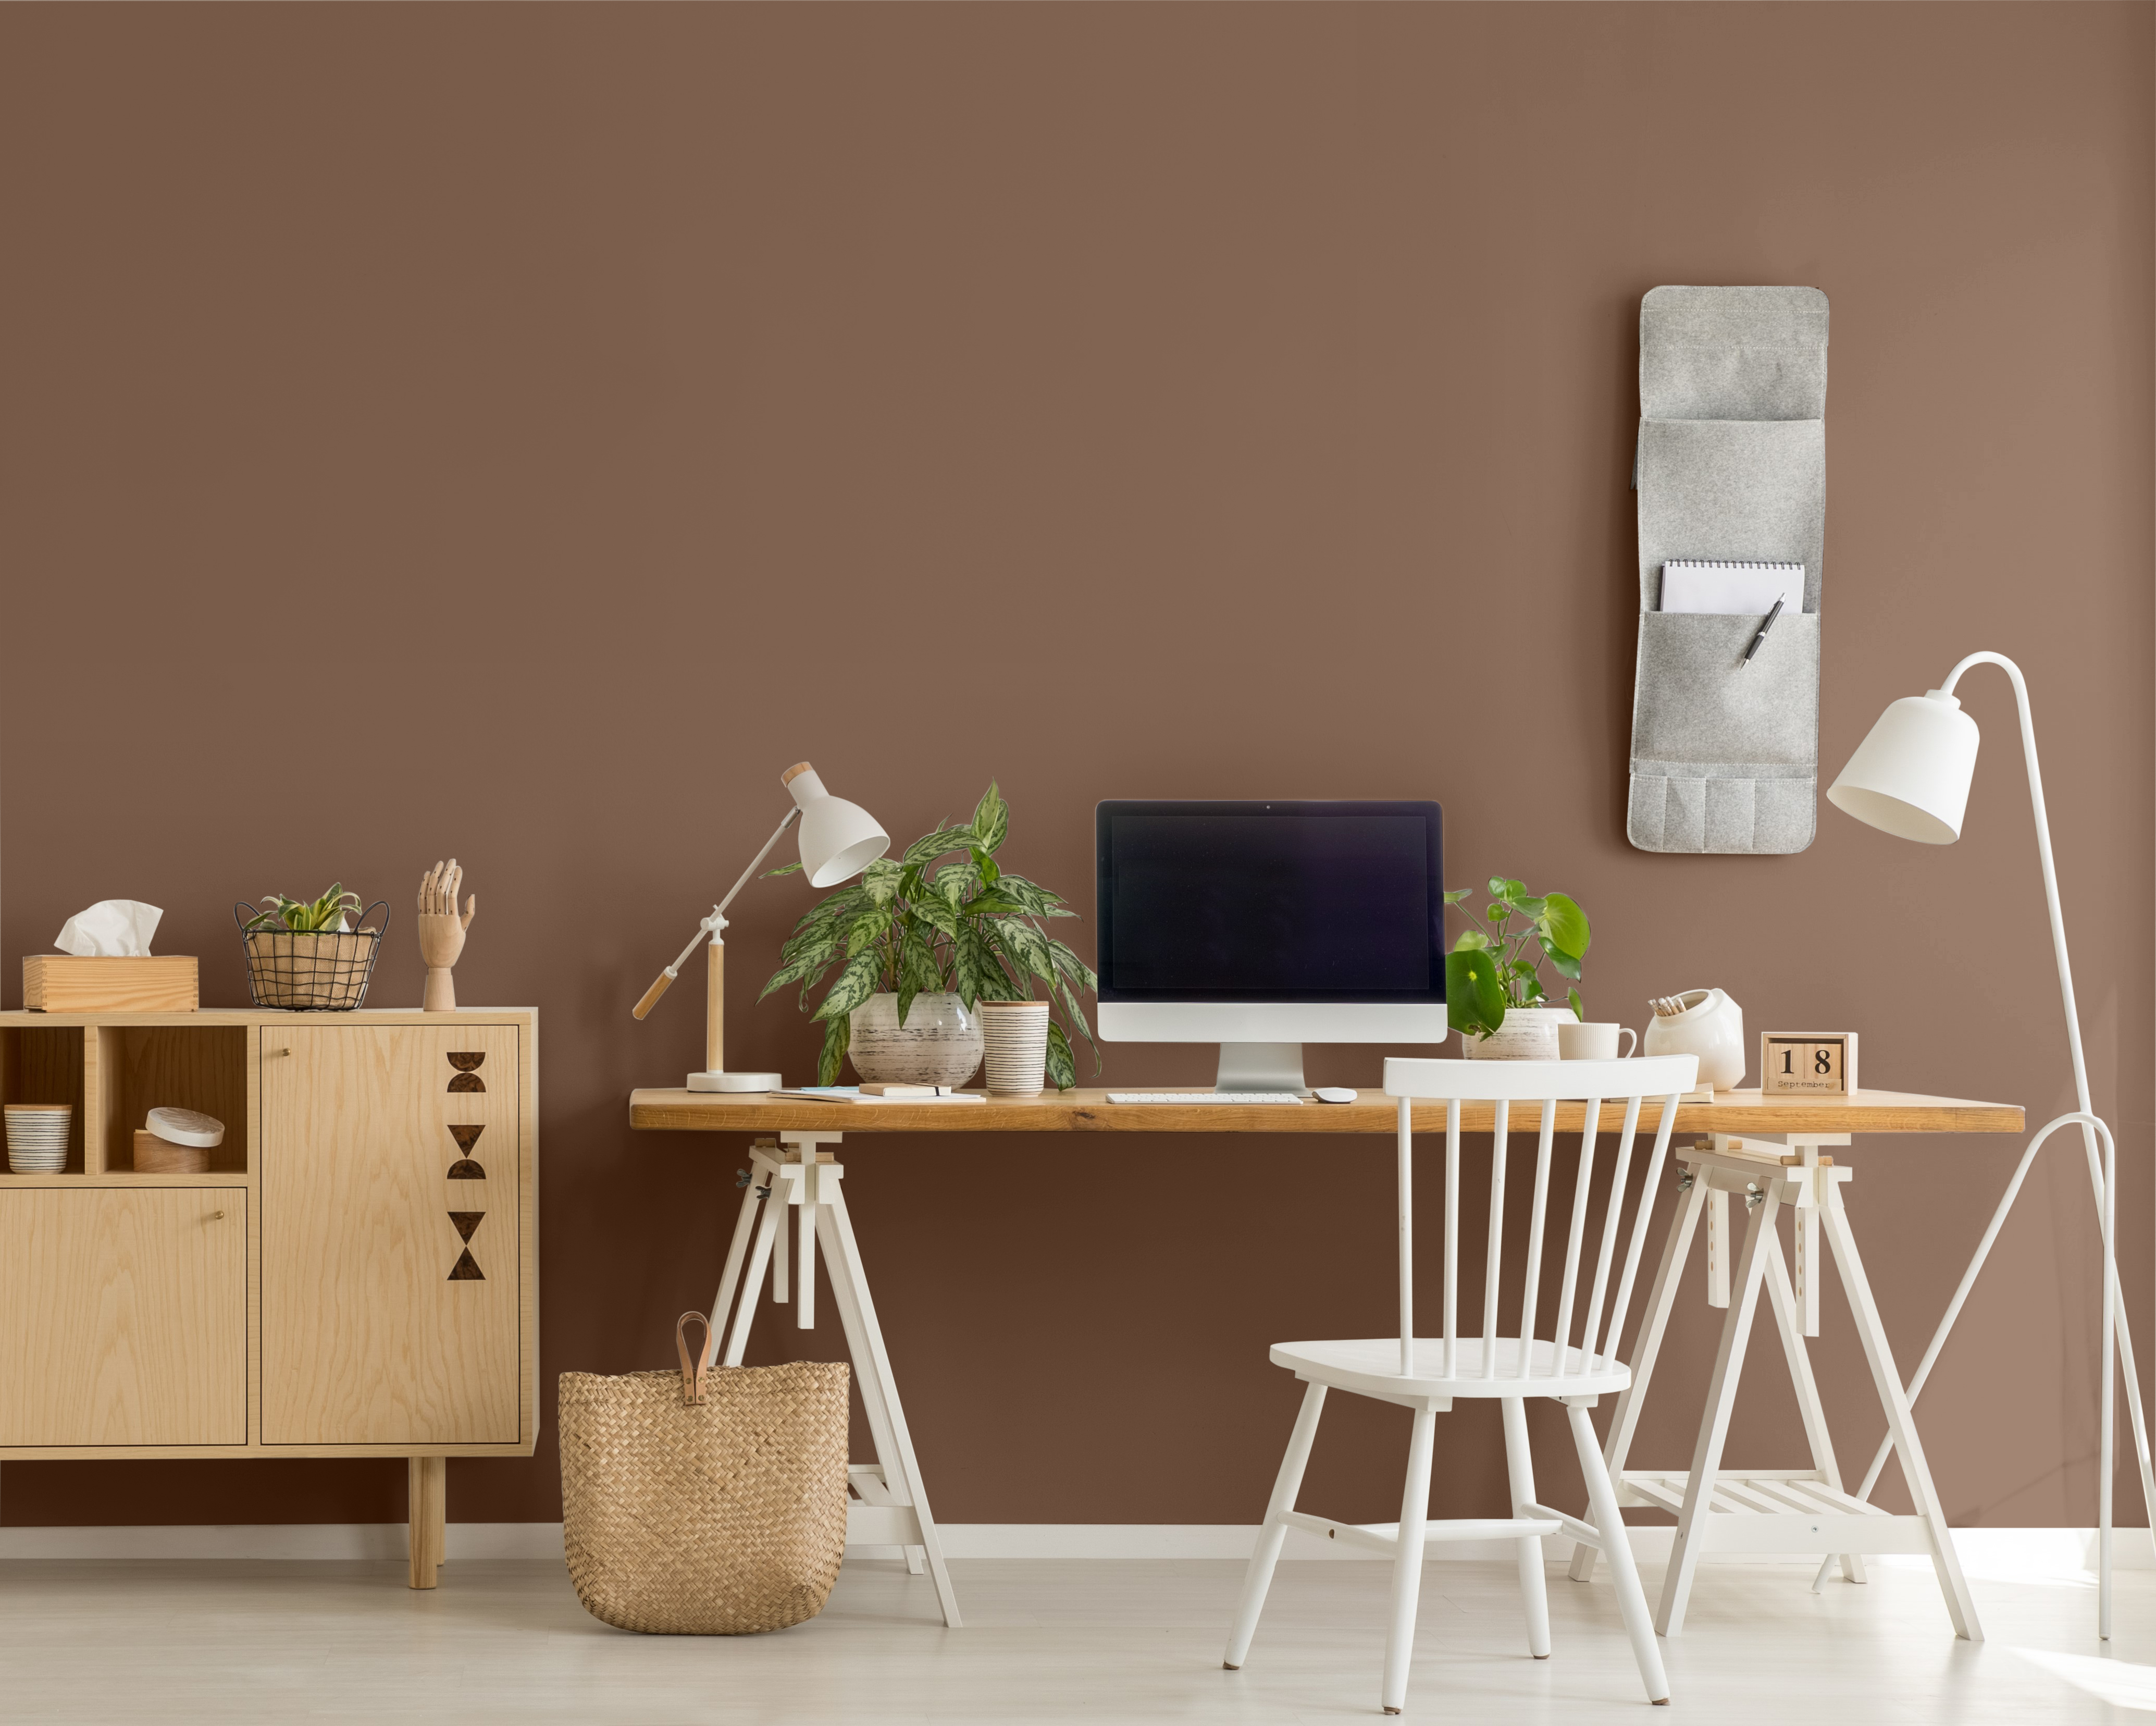 Une photo d'une petite armoire en bois à côté d'un pupitre sur lequel sont placés un ordinateur et des plantes dans un bureau à domicile. Le mur est peinturé en un brun appelé Mustang sauvage.